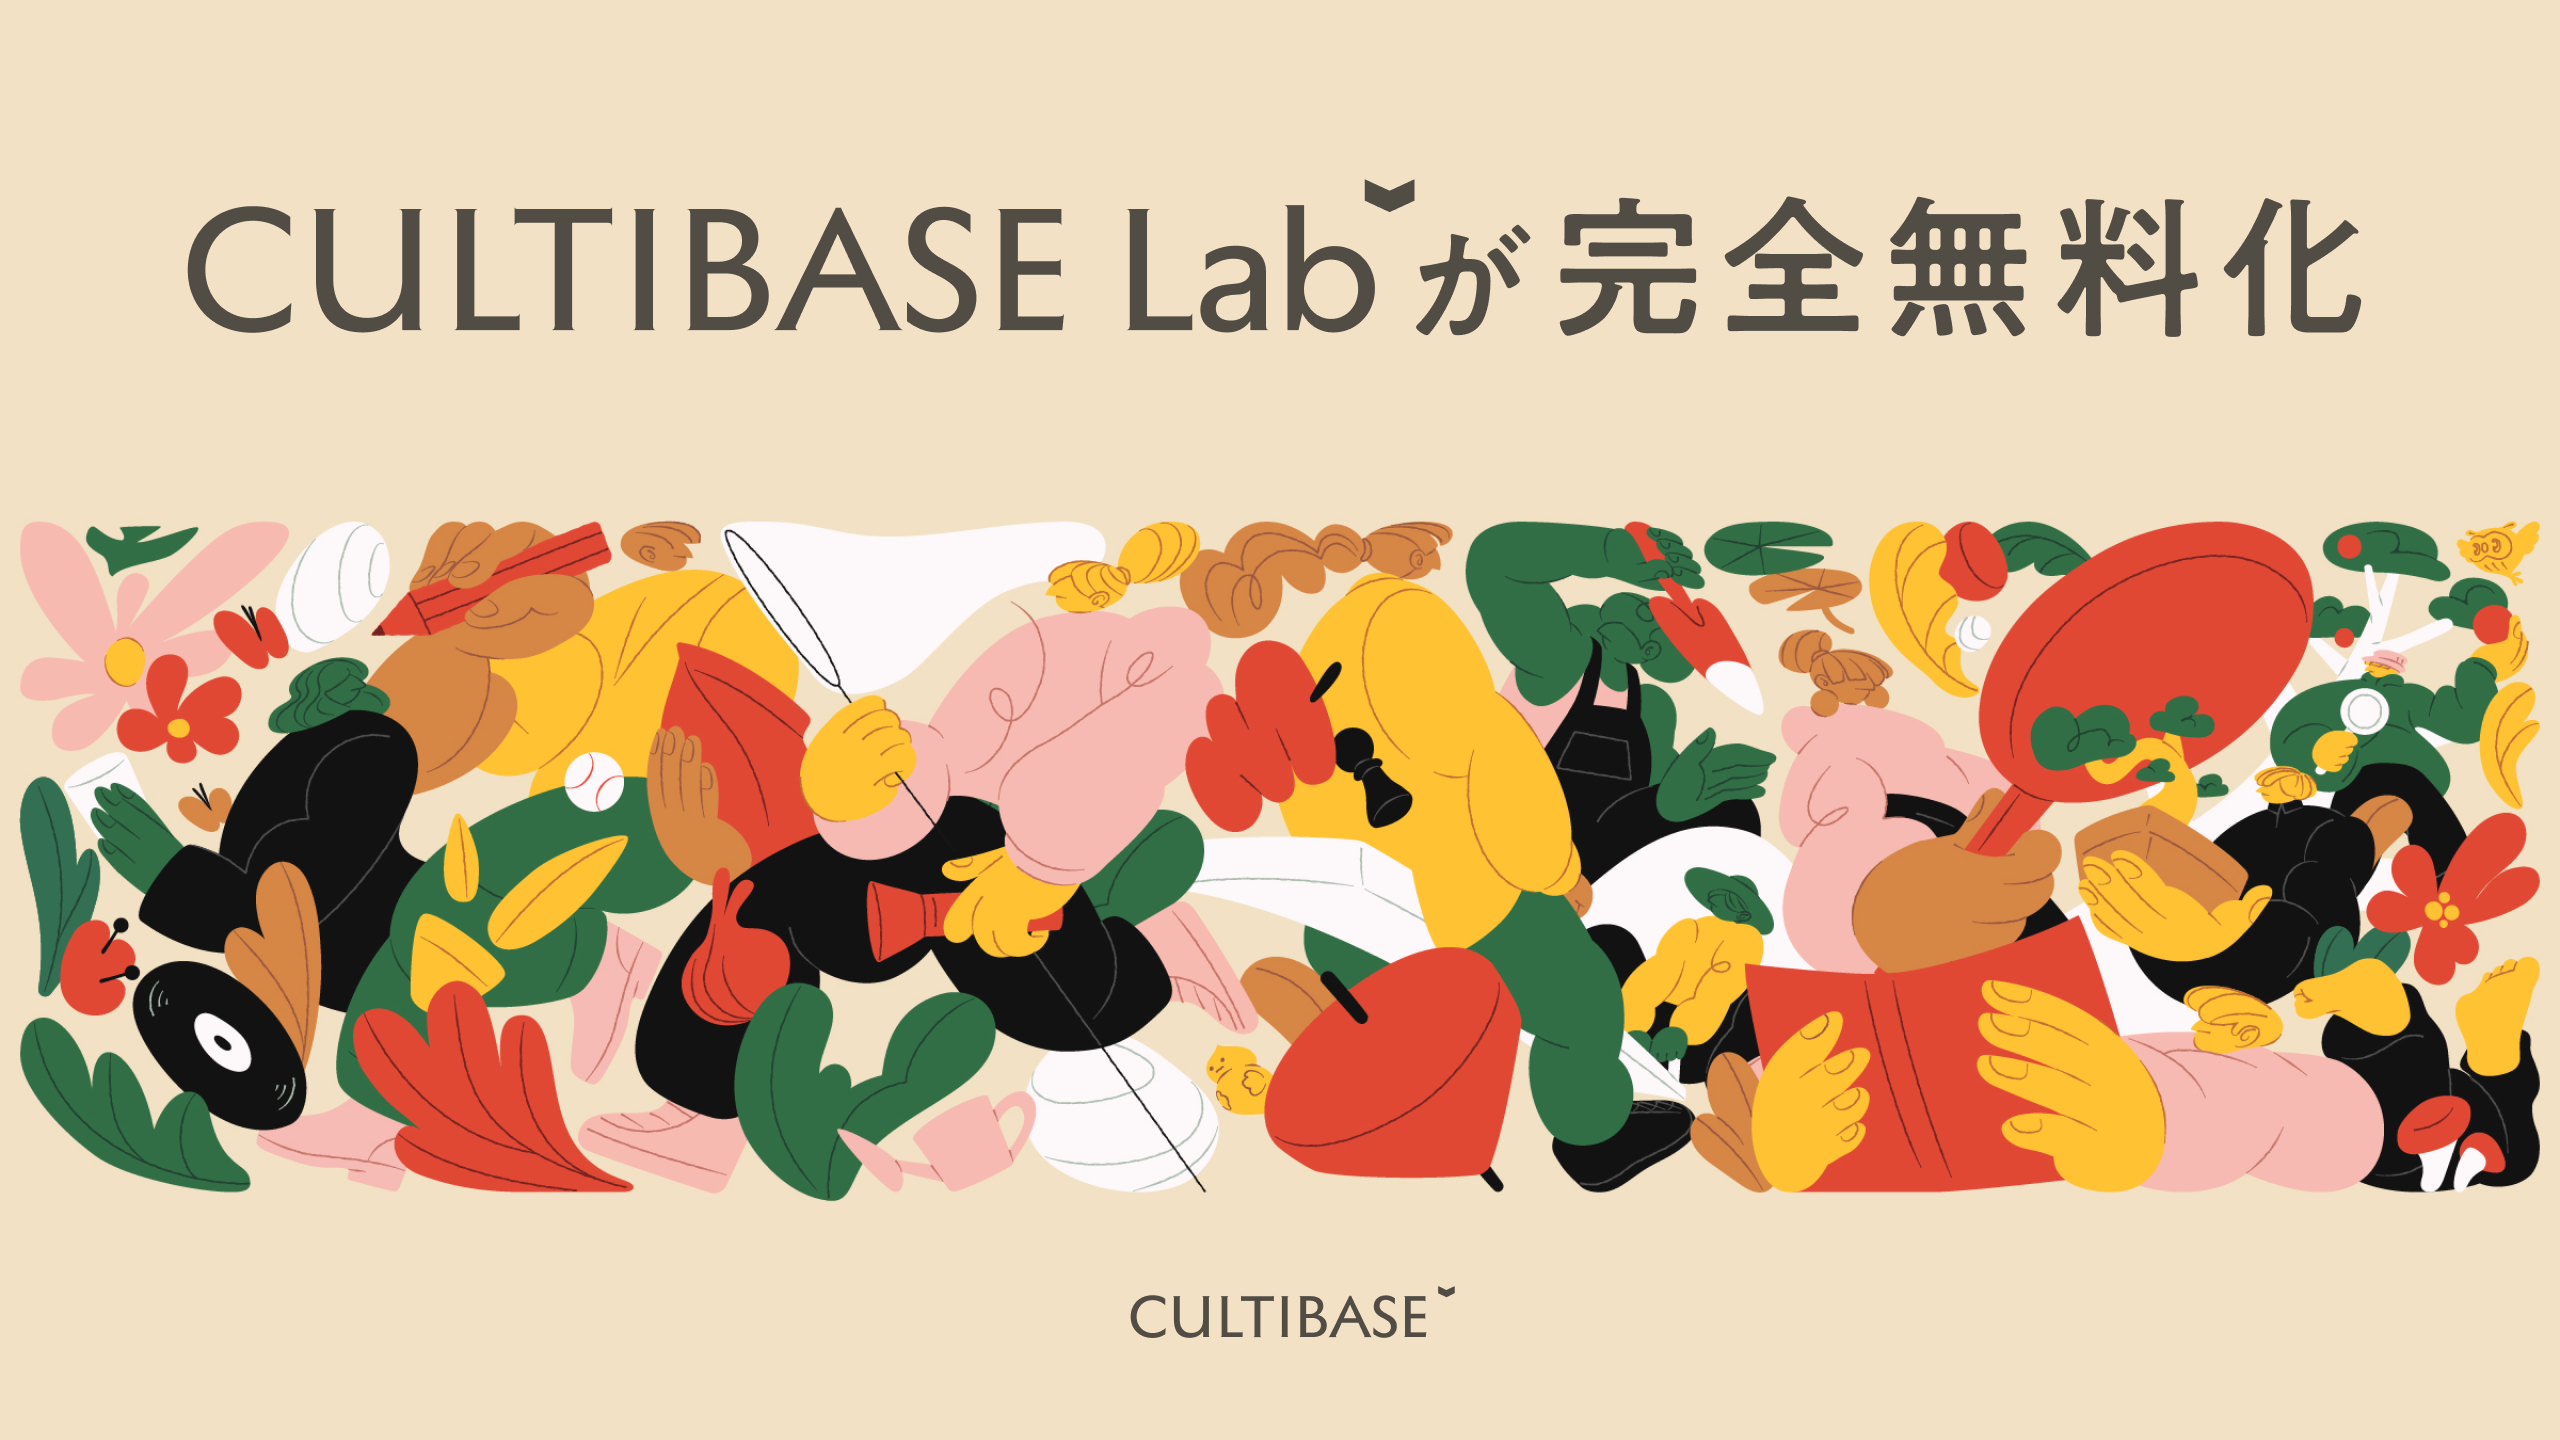 「CULTIBASE Lab」を完全無料化。理論と実践が融合した経営・マネジメントの最新知見を学ぶ、オープンソースコミュニティを目指す